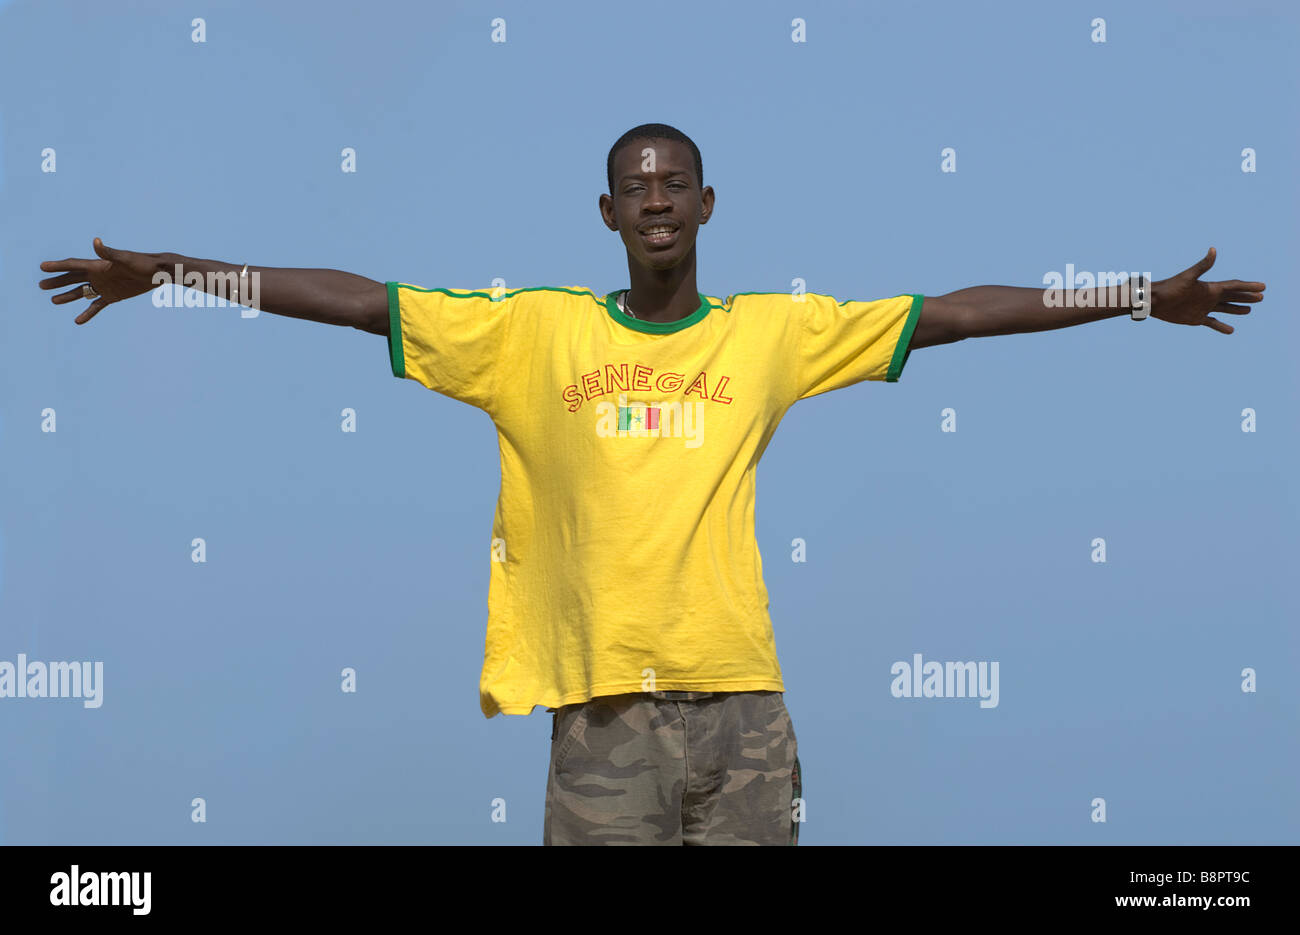 Hombre africano de pie brazos abiertos usando el equipo de fútbol de Senegal colores amarillo y verde camiseta Foto de stock